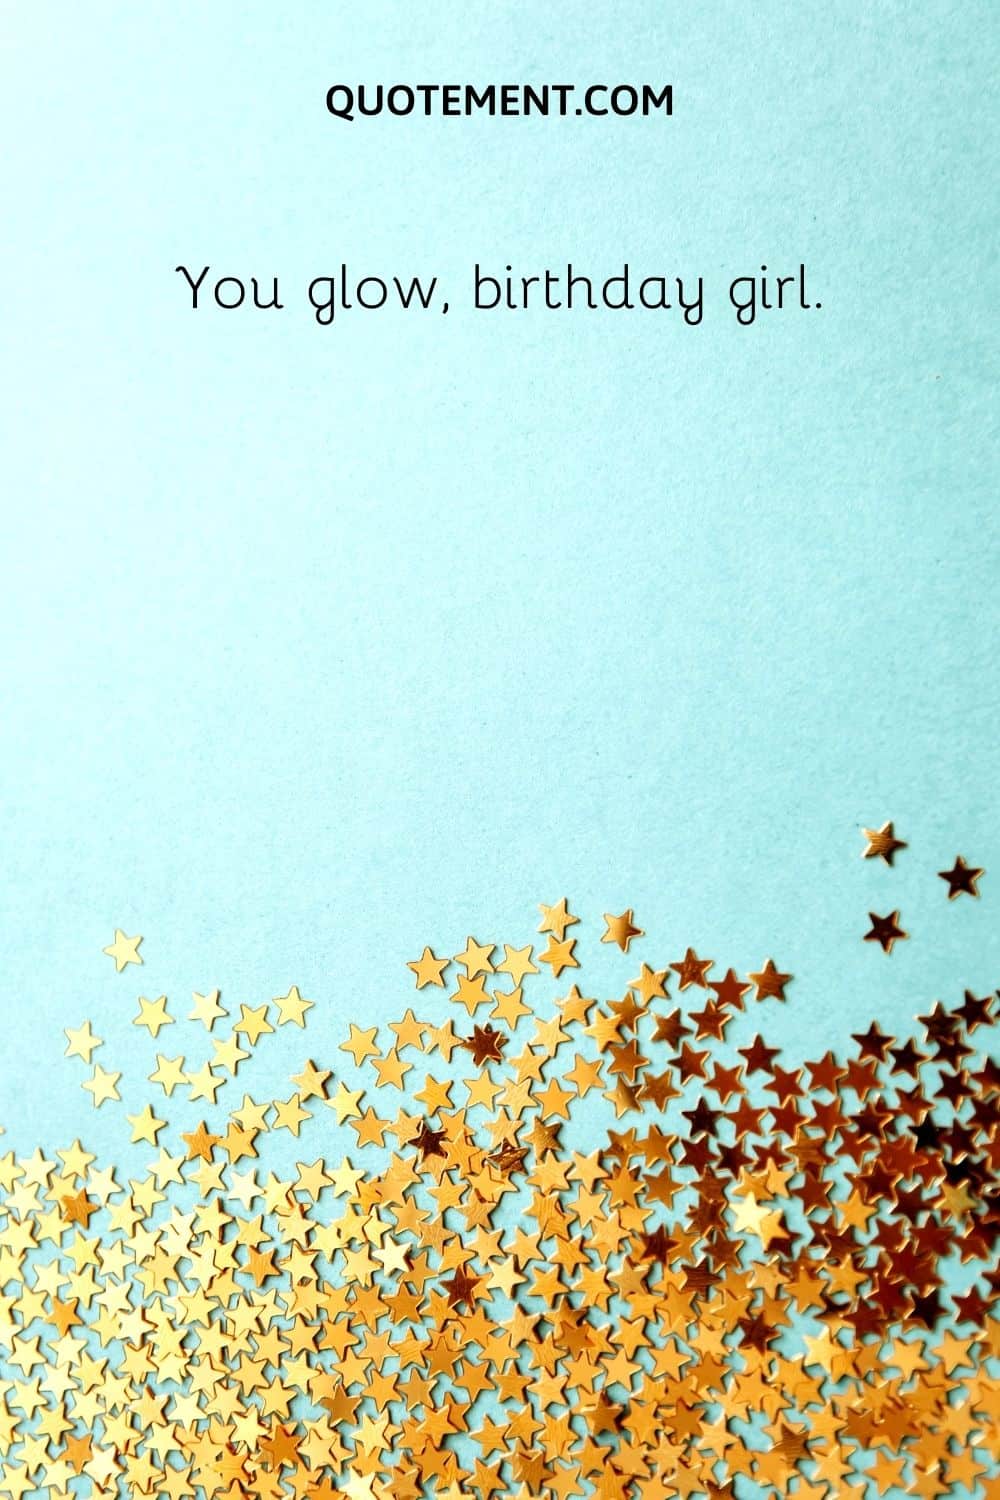 You glow, birthday girl.